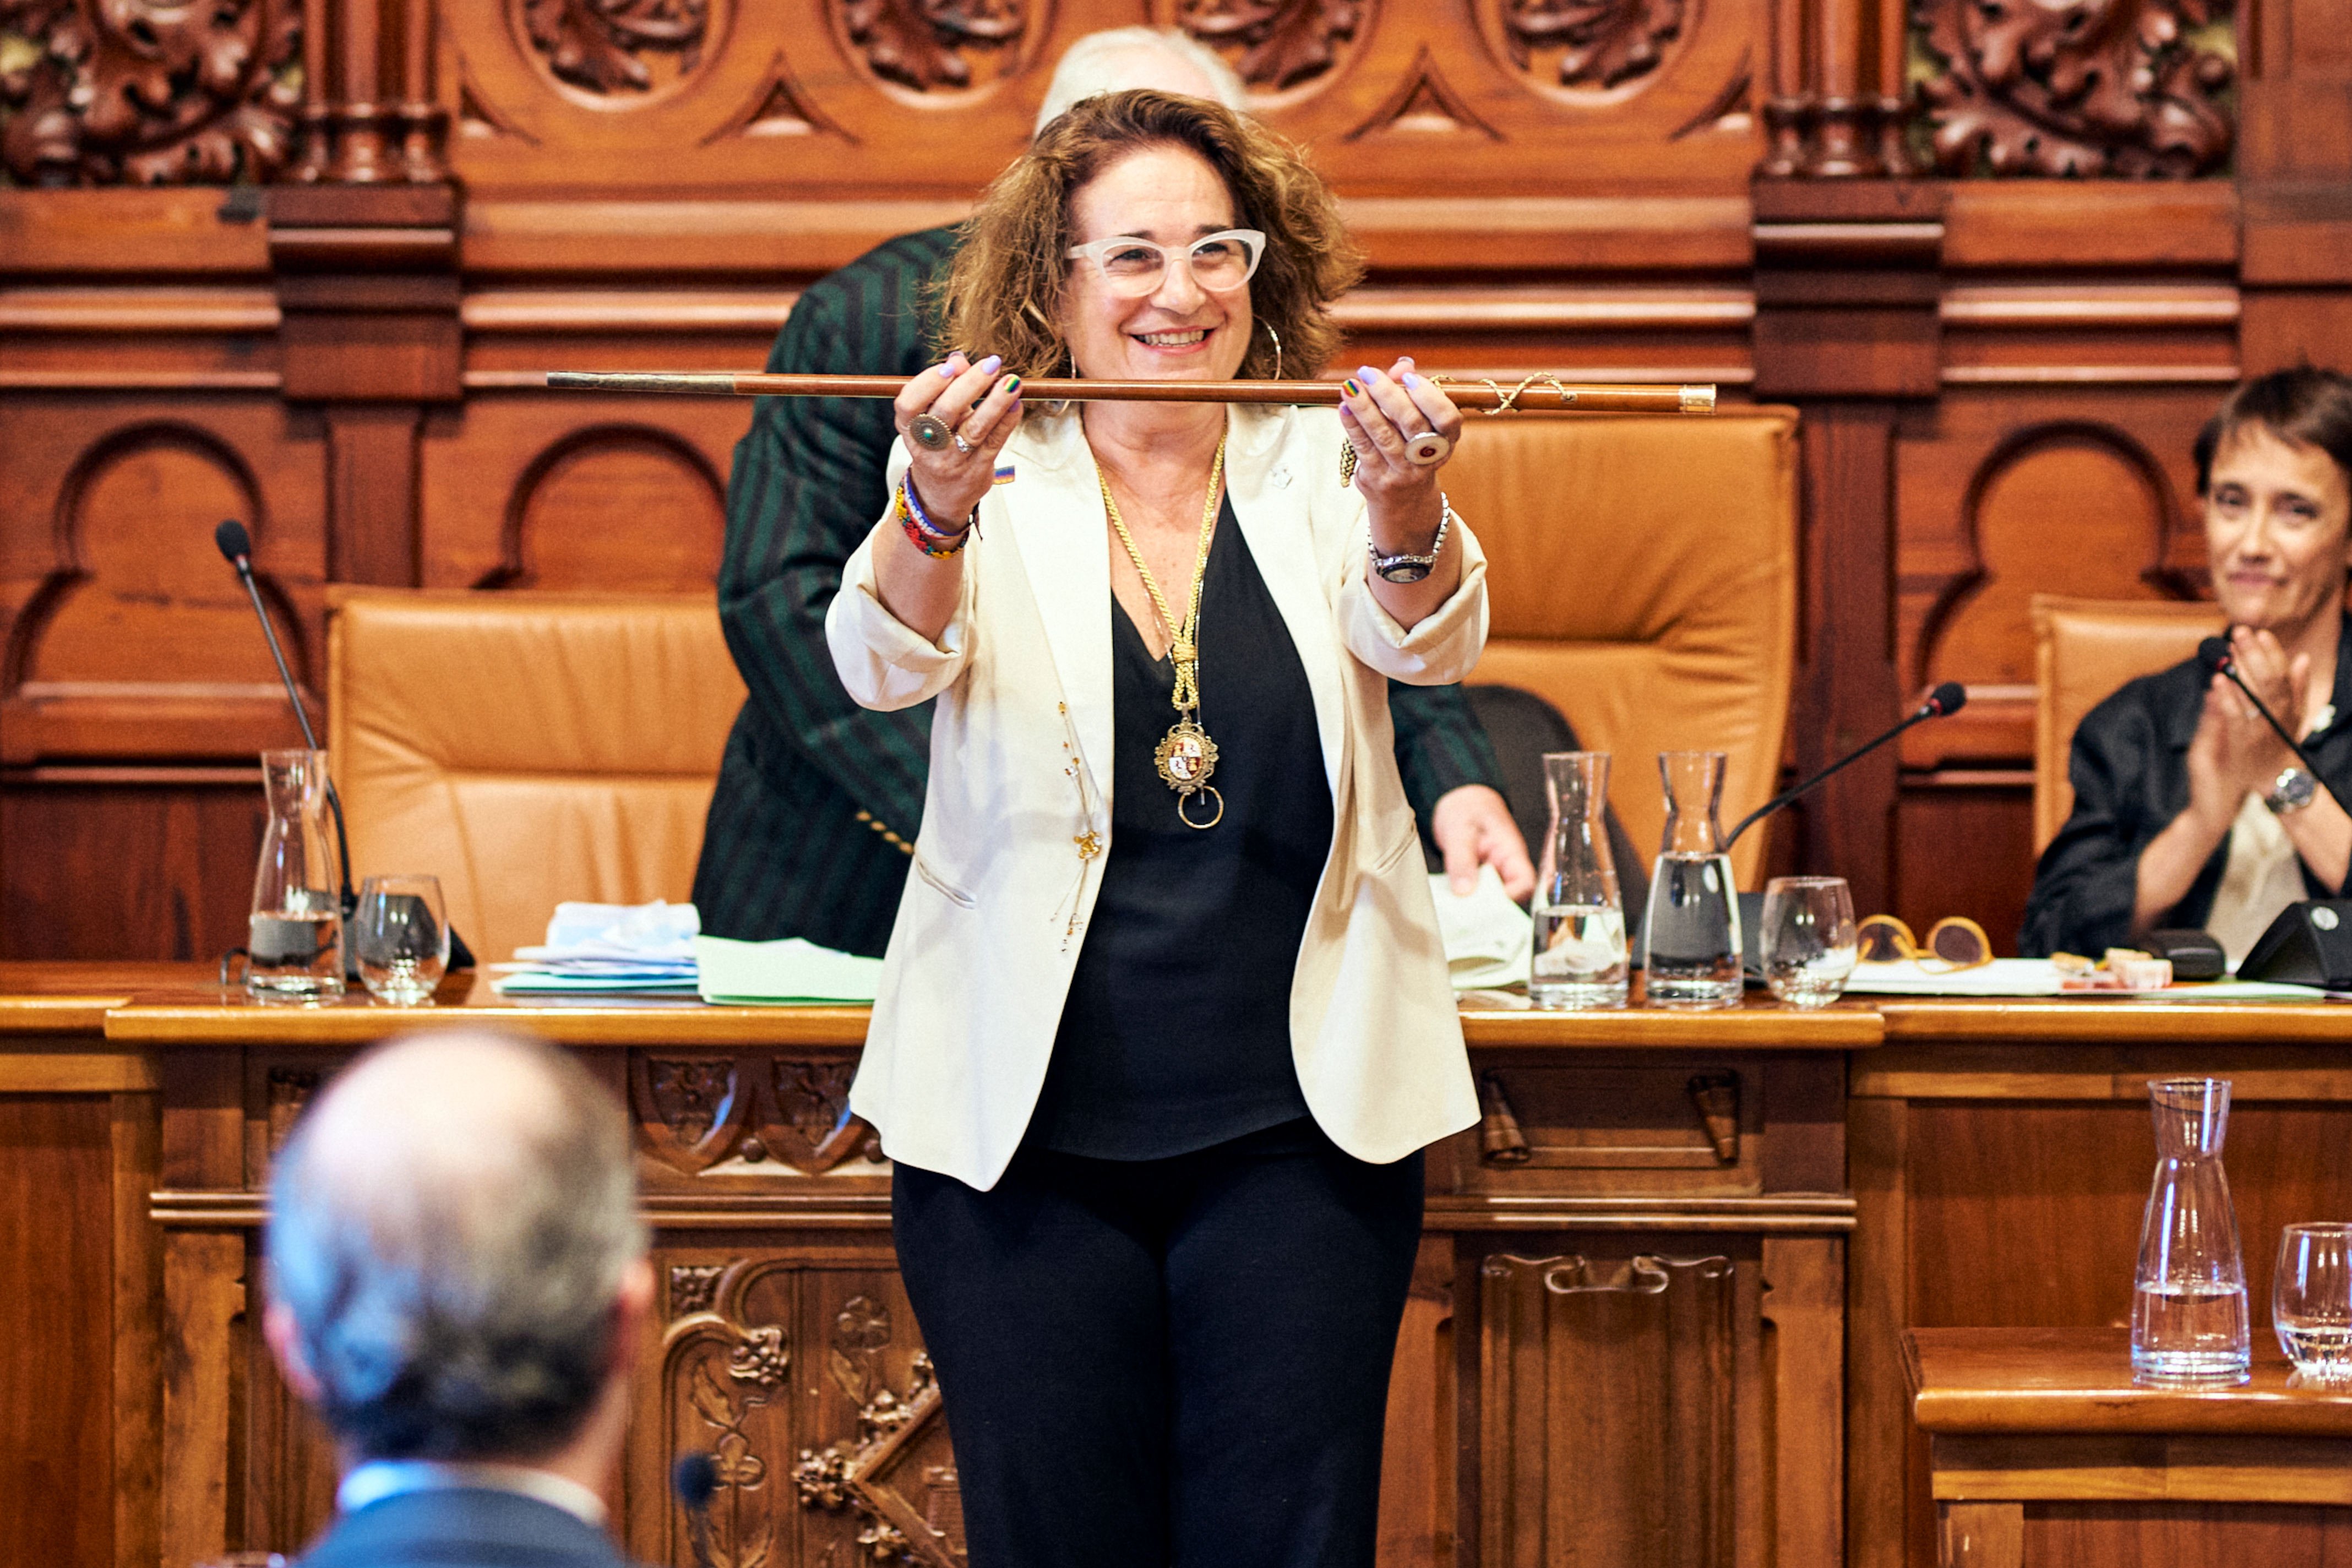 La alcaldesa de Sitges, sobre su detención: "Vivimos el momento con voluntad de transparencia"